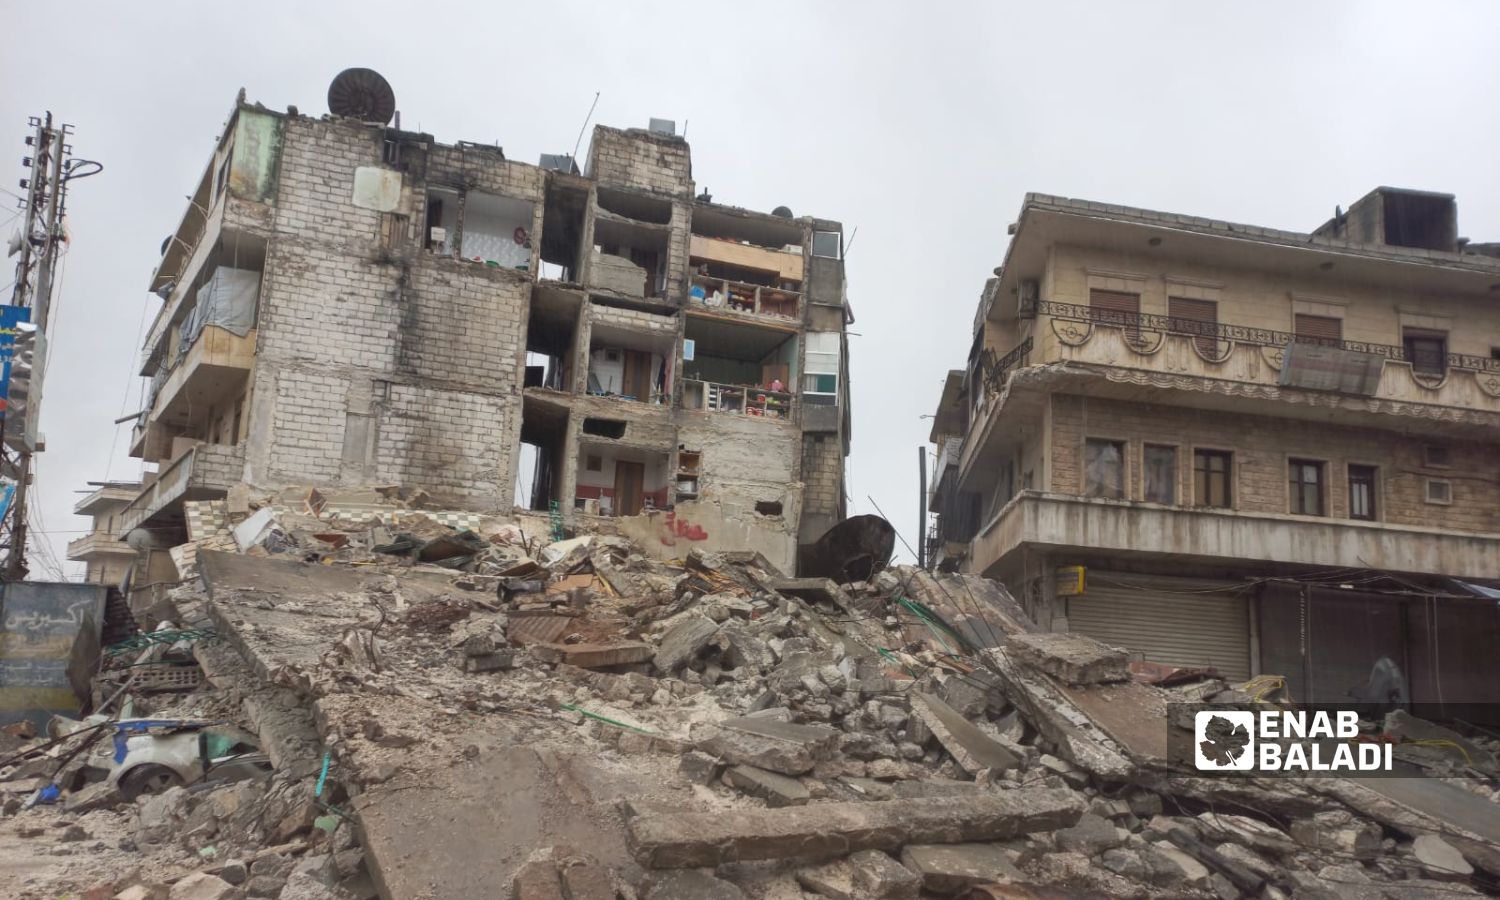 أنقاض وركام لأبنية منهارة إثر زلزال ضرب مناطق شمال غربي سوريا في مدينة سلقين بريف إدلب الشمالي الغربي- 8 شباط 2023 (عنب بلدي)